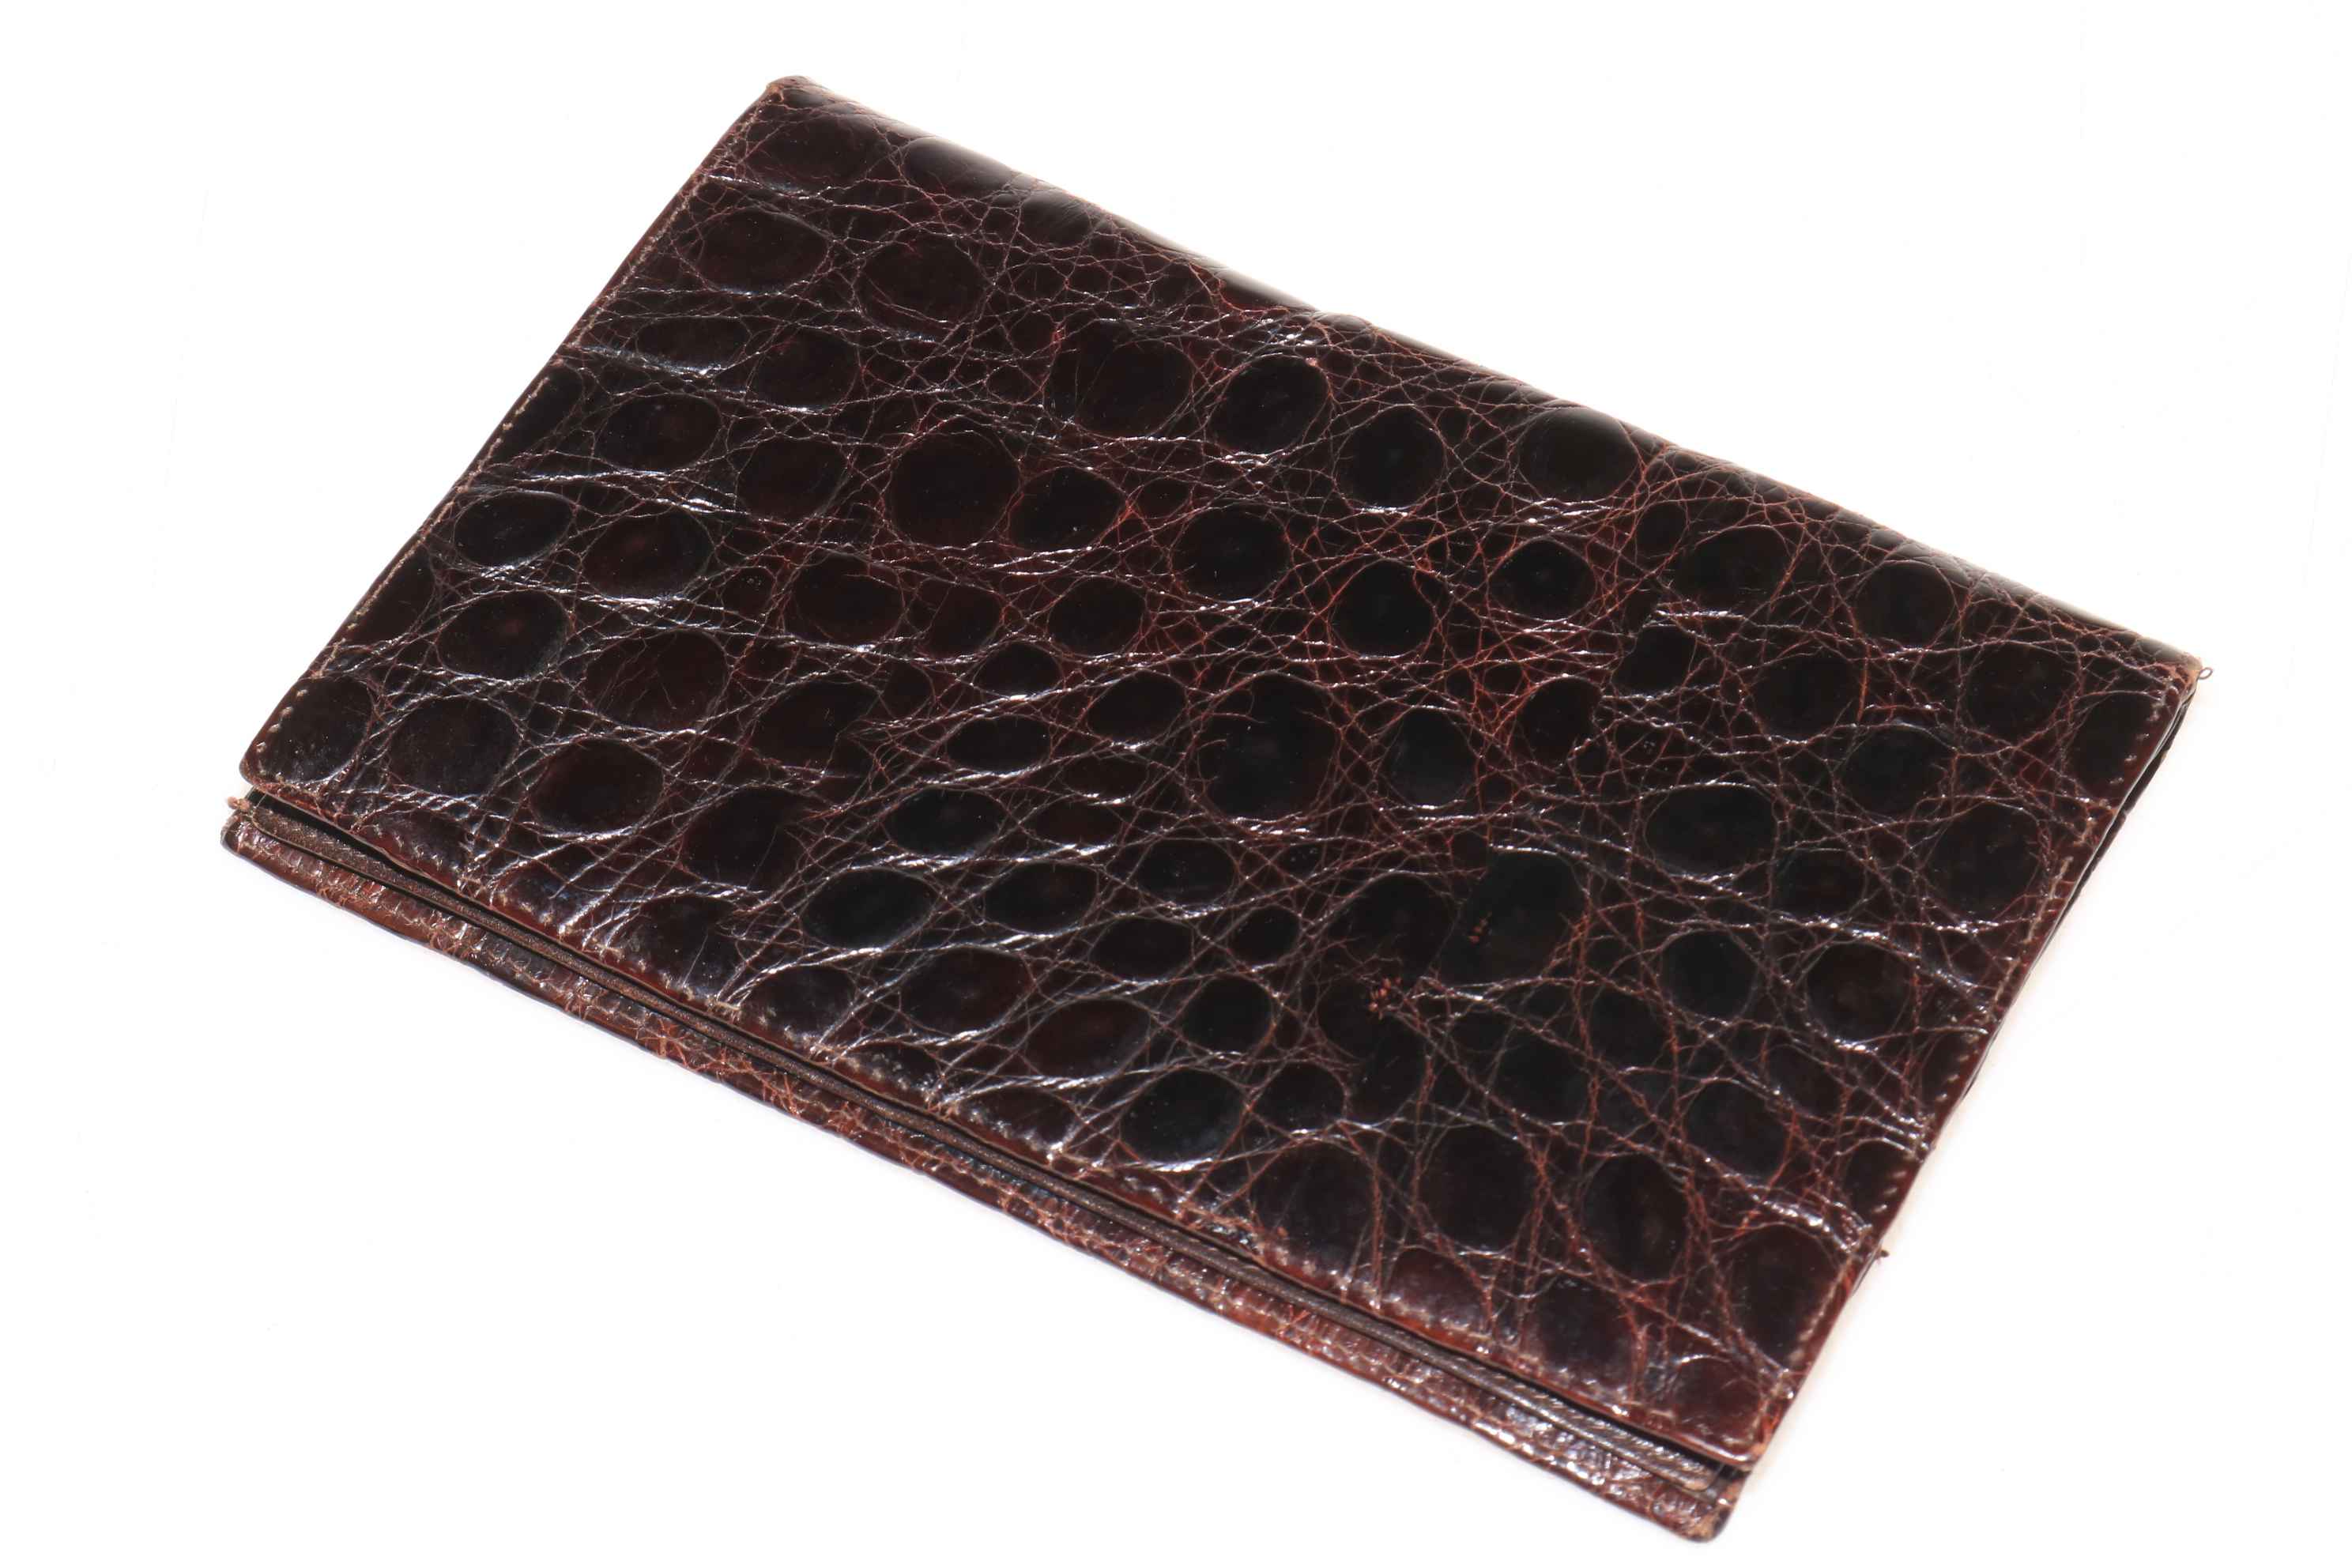 Alligator skin wallet, 17cm by 11.5cm. - Image 2 of 2